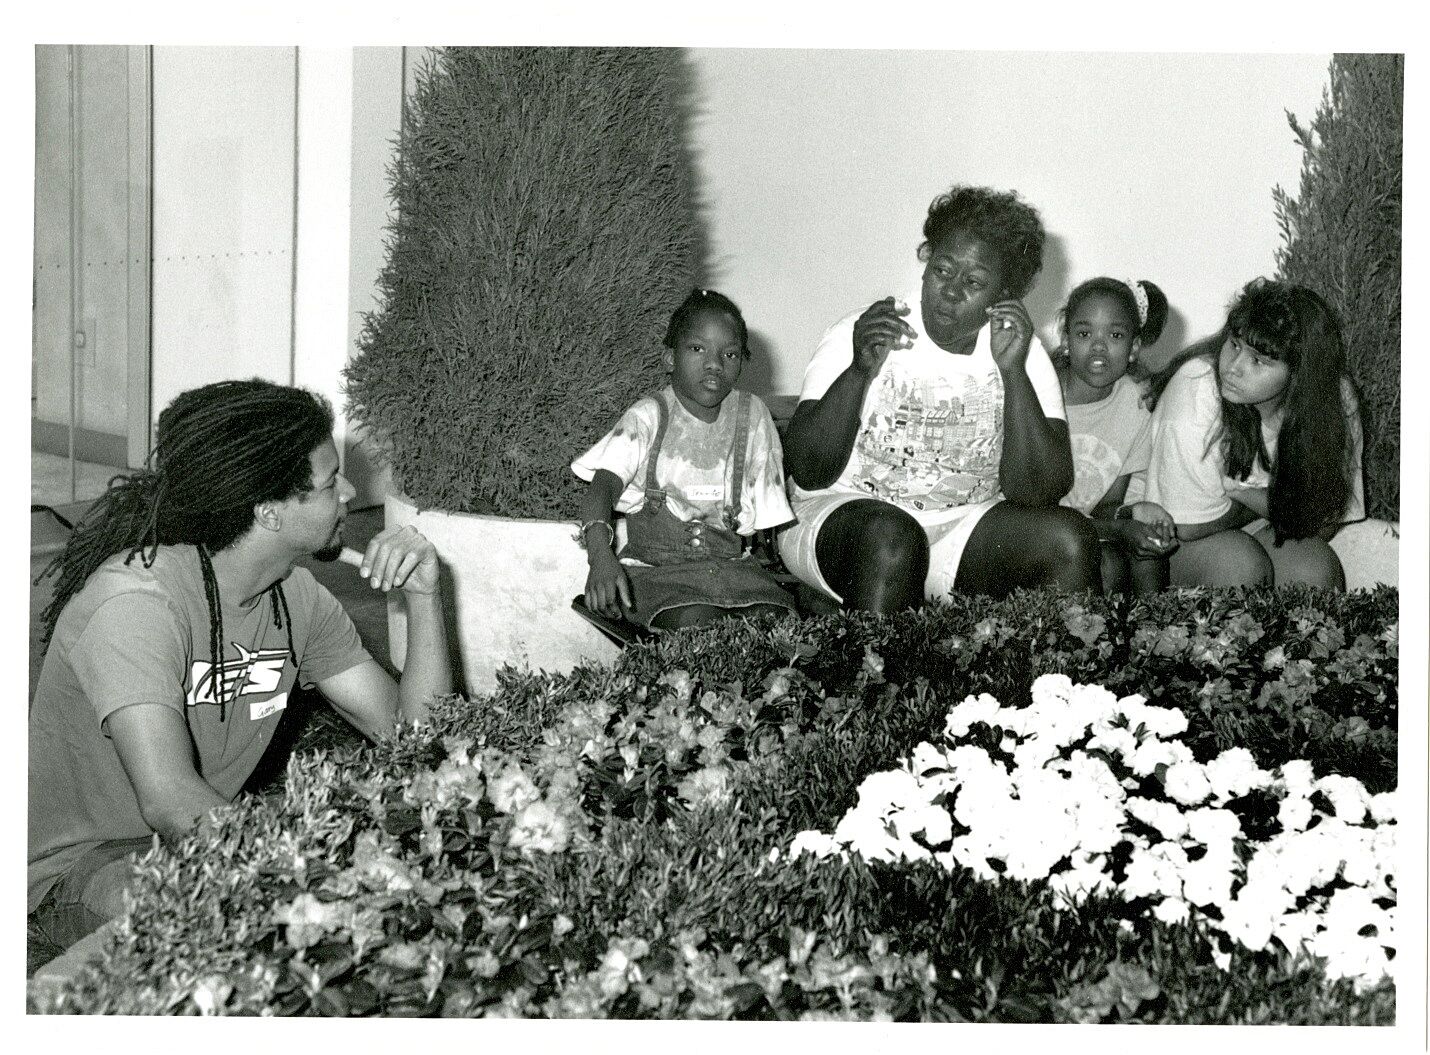 An artist talks to a family in a garden art installation.